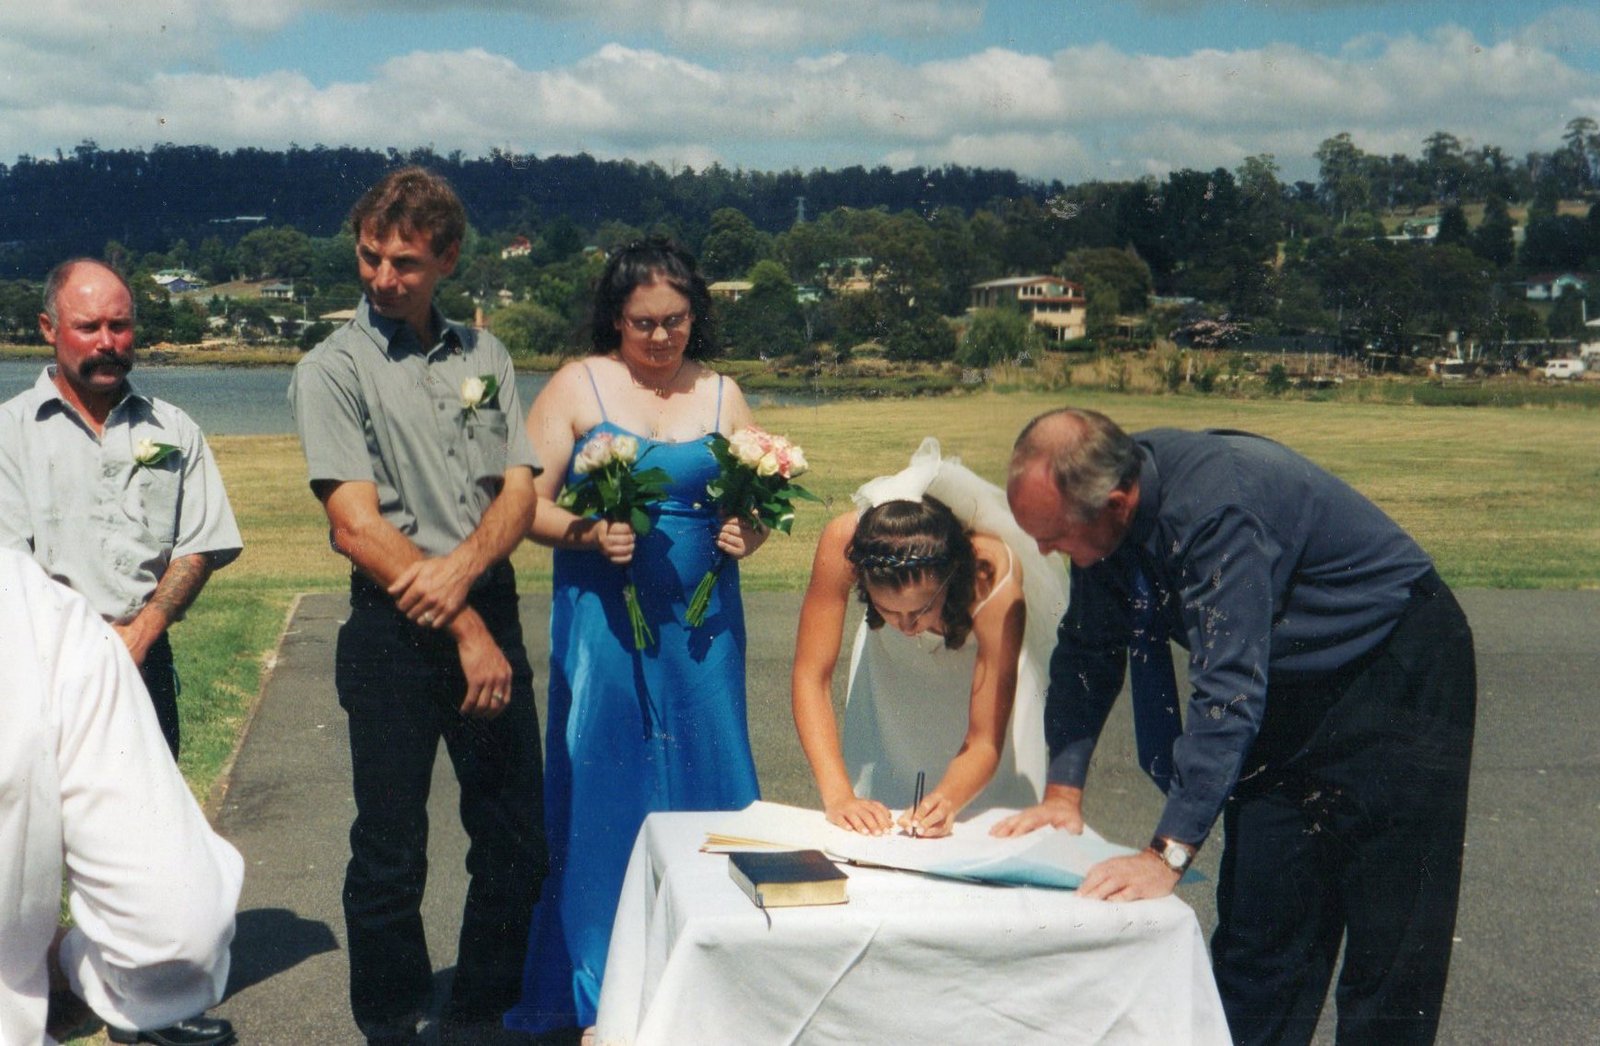 10 Hannah & Paul Boyd with bridesmaid on their wedding day.jpg